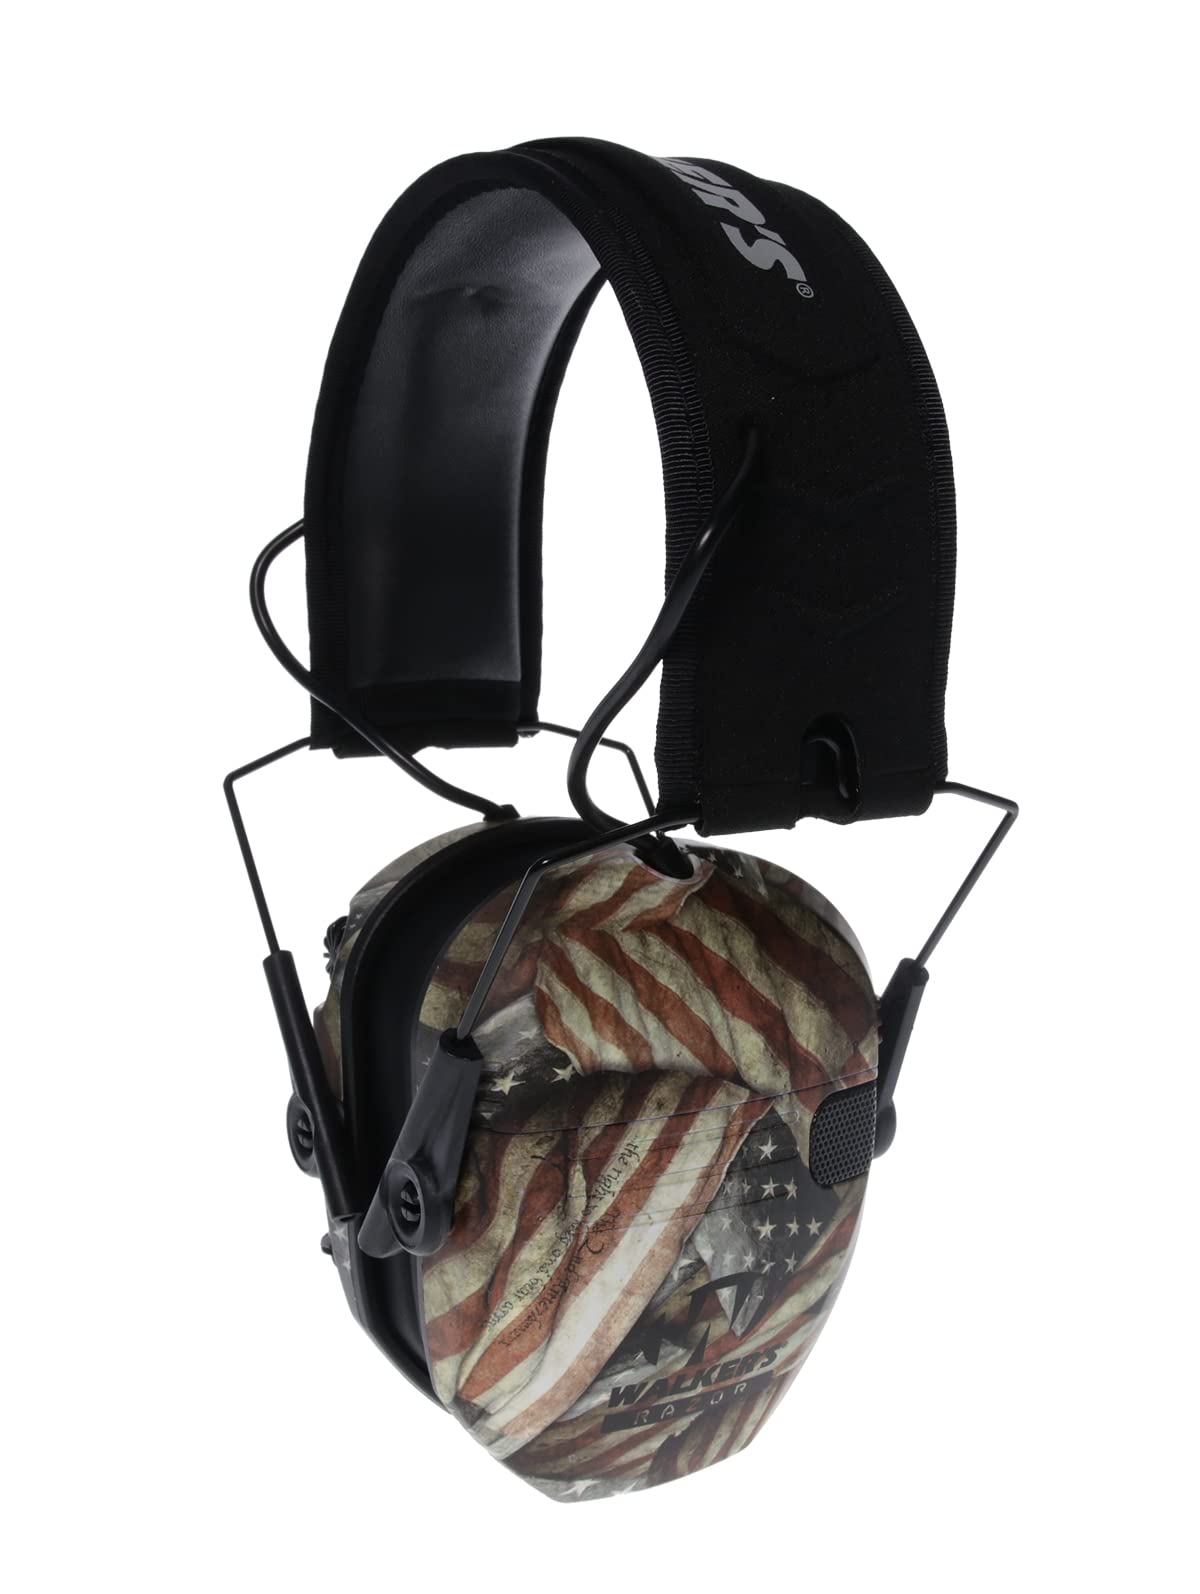 Walker's Razor Slim 超薄紧凑设计可调节范围射击狩猎听力保护电子耳罩